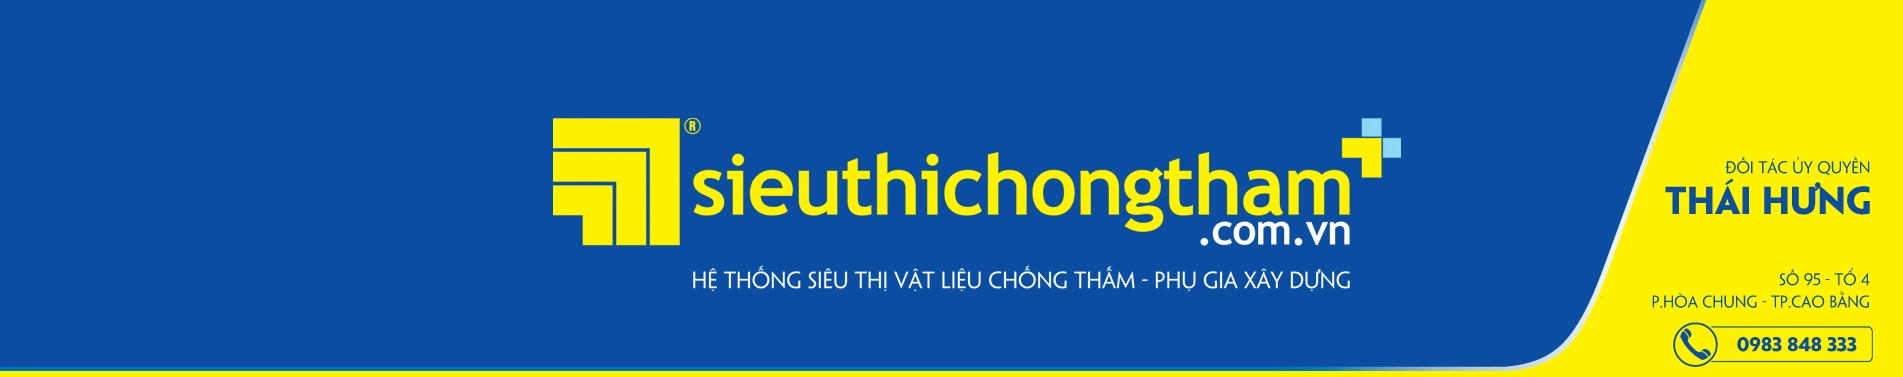 Thai Hung Banner